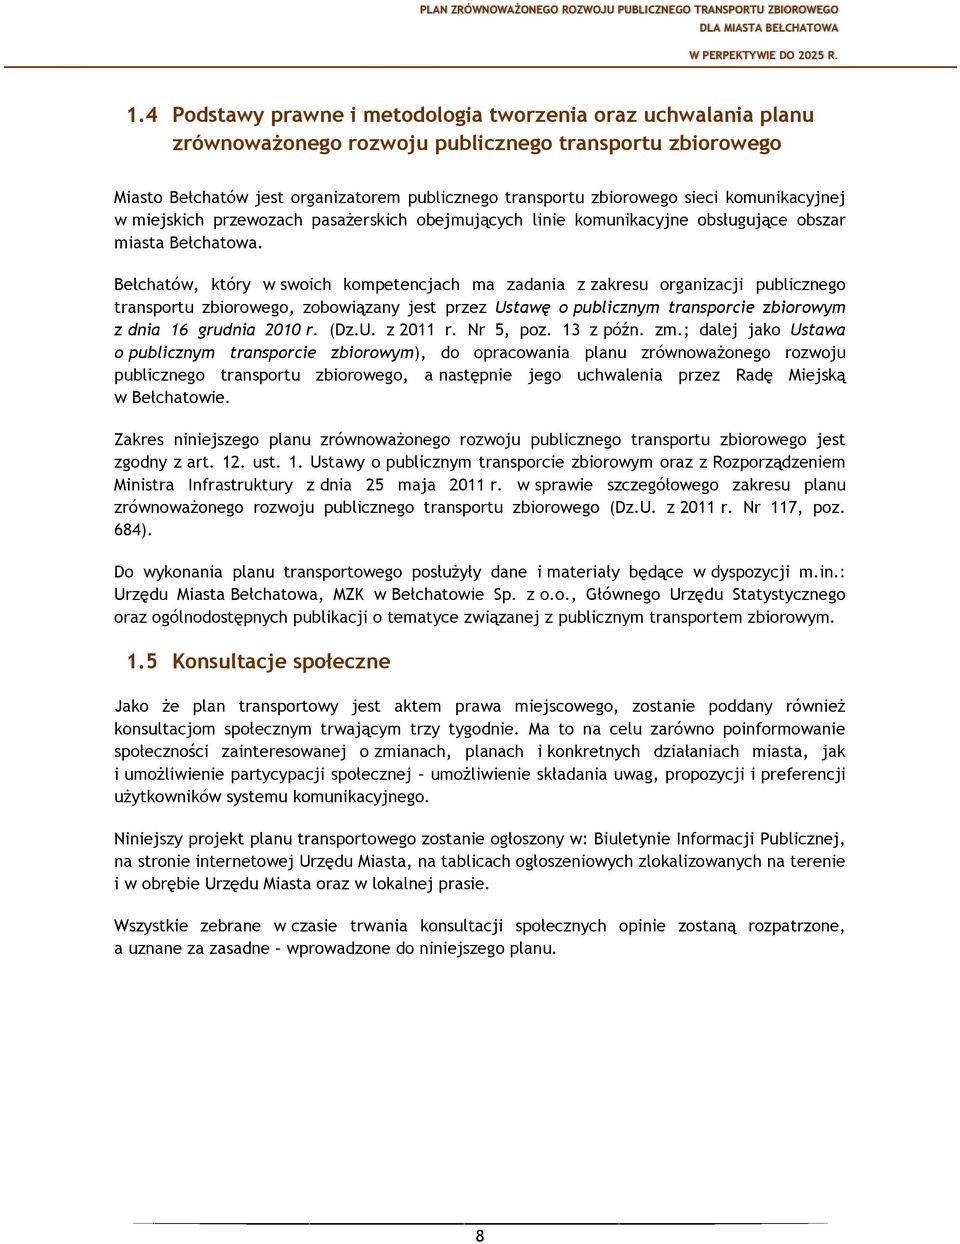 Bełchatów, który w swoich kompetencjach ma zadania z zakresu organizacji publicznego transportu zbiorowego, zobowiązany jest przez Ustawę o publicznym transporcie zbiorowym z dnia 16 grudnia 2010 r.